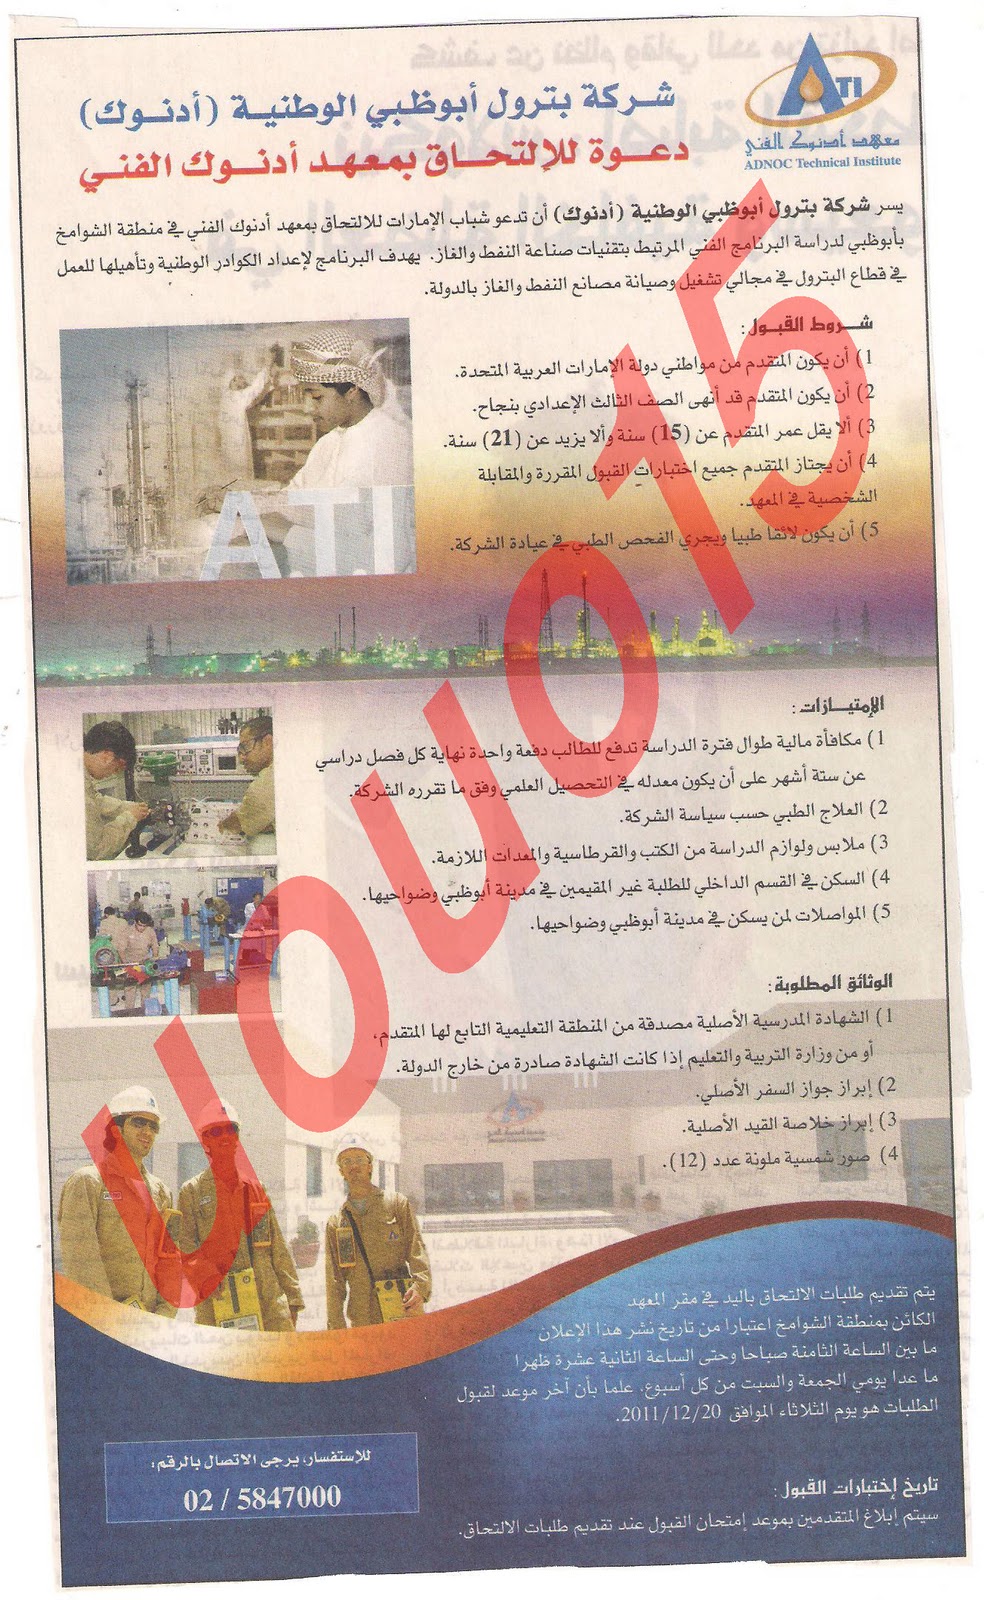 وظائف شاغرة من جريدة الخليج الجمعة 9\12\2011  Picture+031